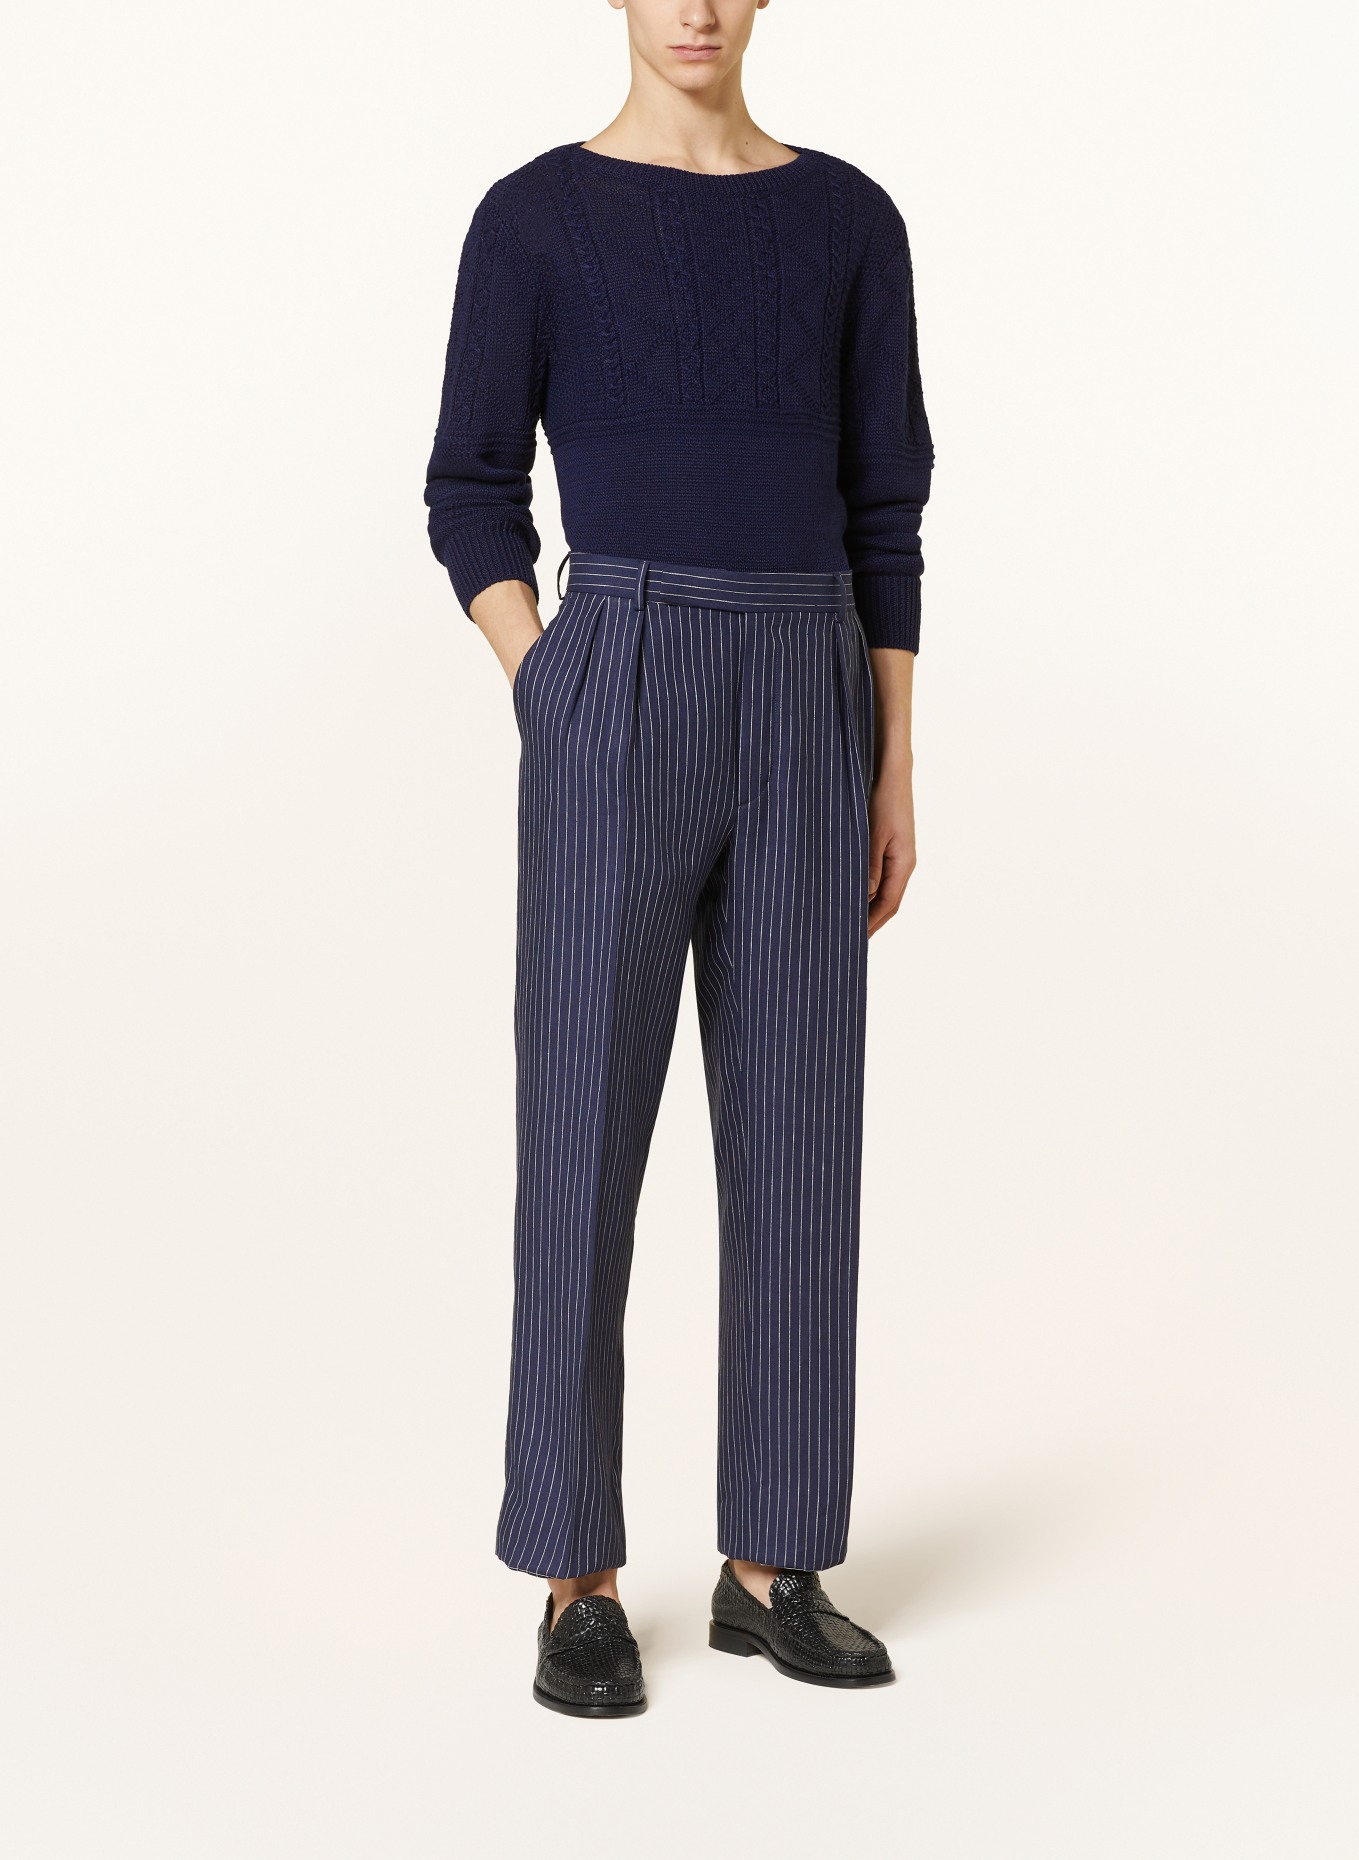 RALPH LAUREN PURPLE LABEL Sweater with linen, Color: DARK BLUE (Image 2)